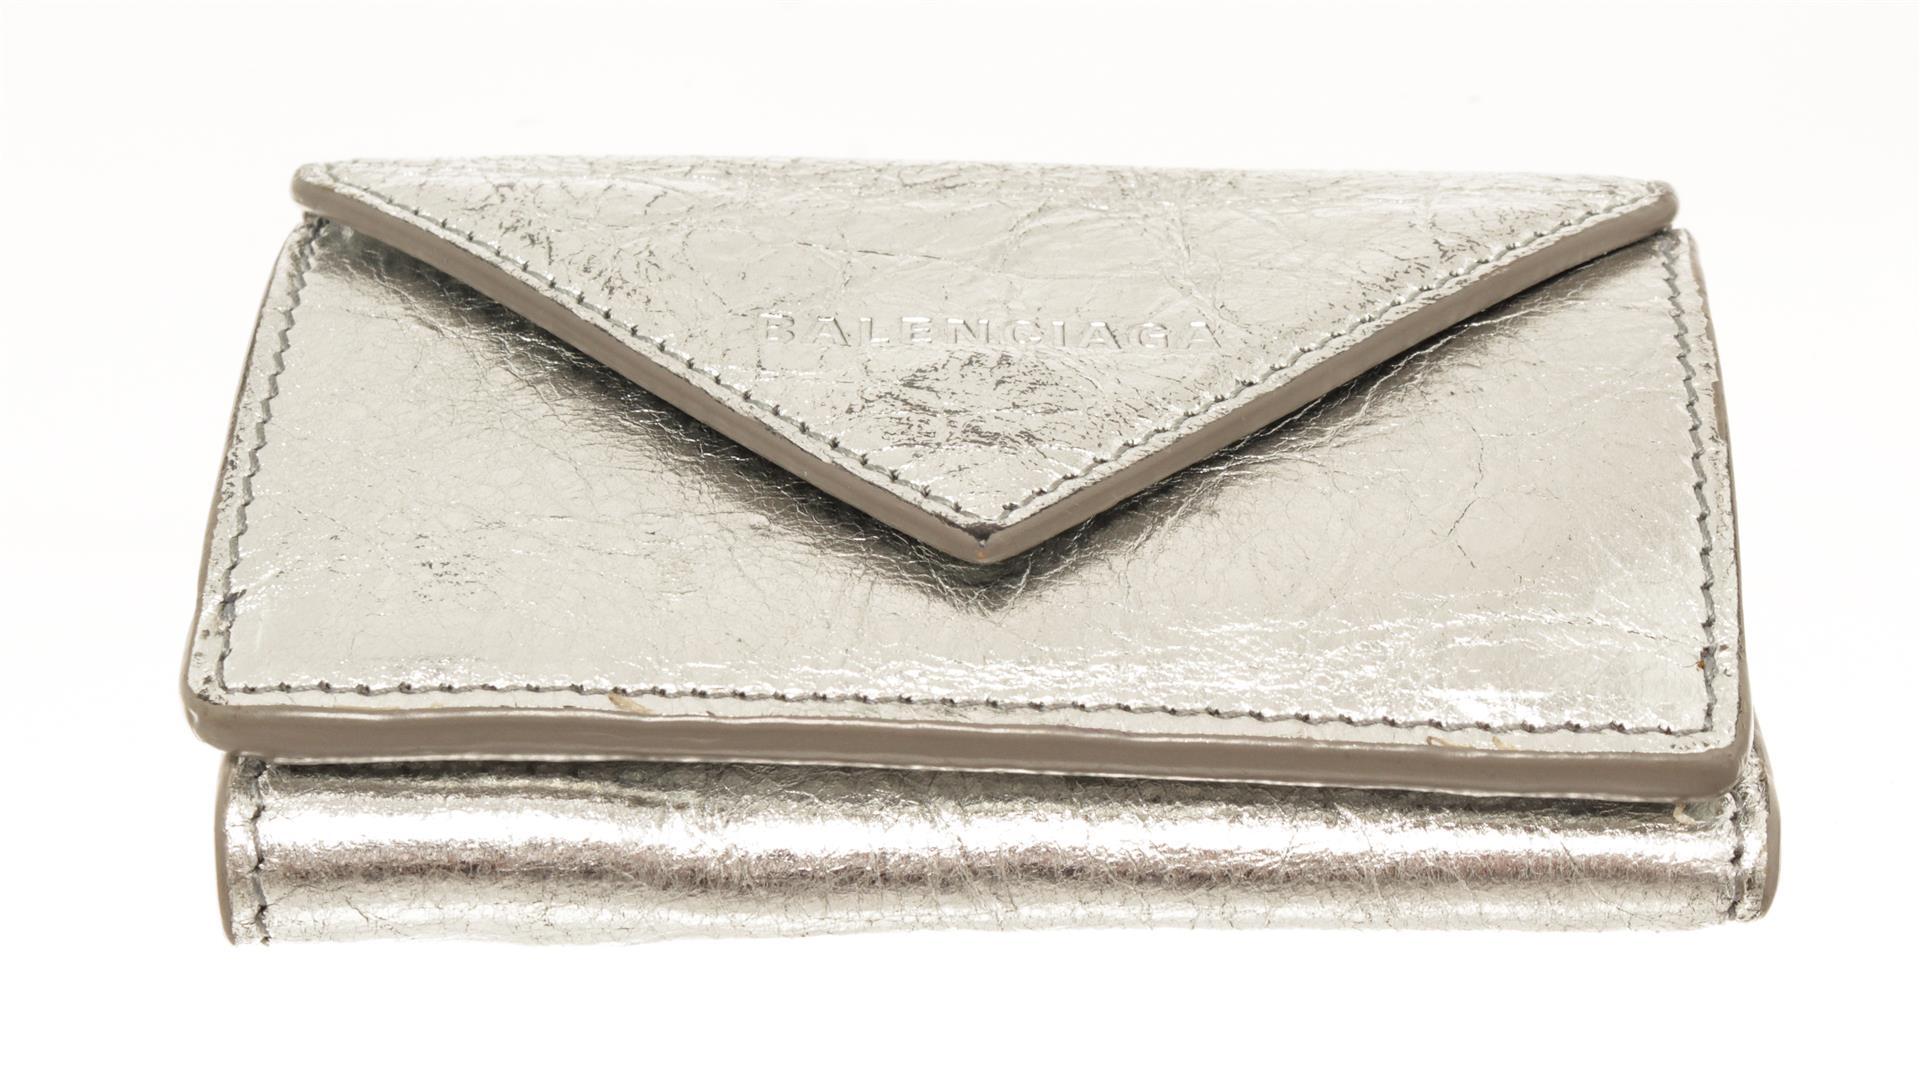 Balenciaga Silver Papier Flap Mini Wallet